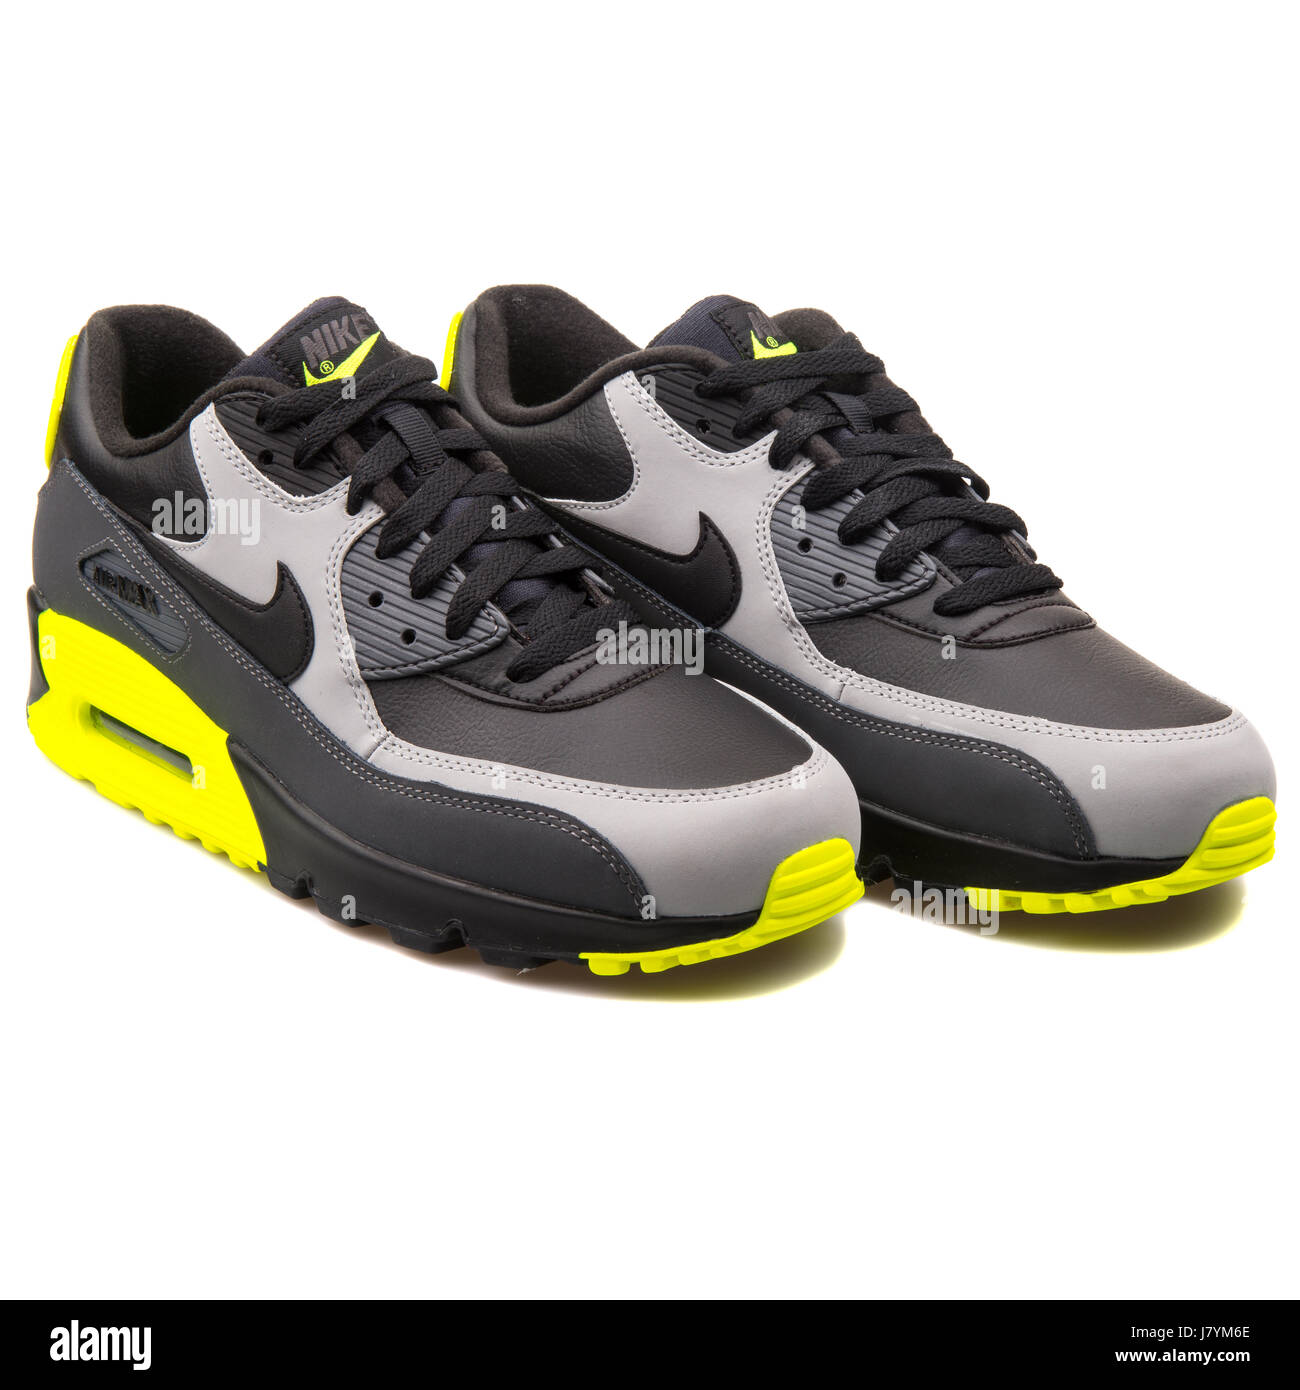 Nike Air Max LTR gris y amarillo hombres zapatillas deportivas - 652980-007 Fotografía de stock - Alamy